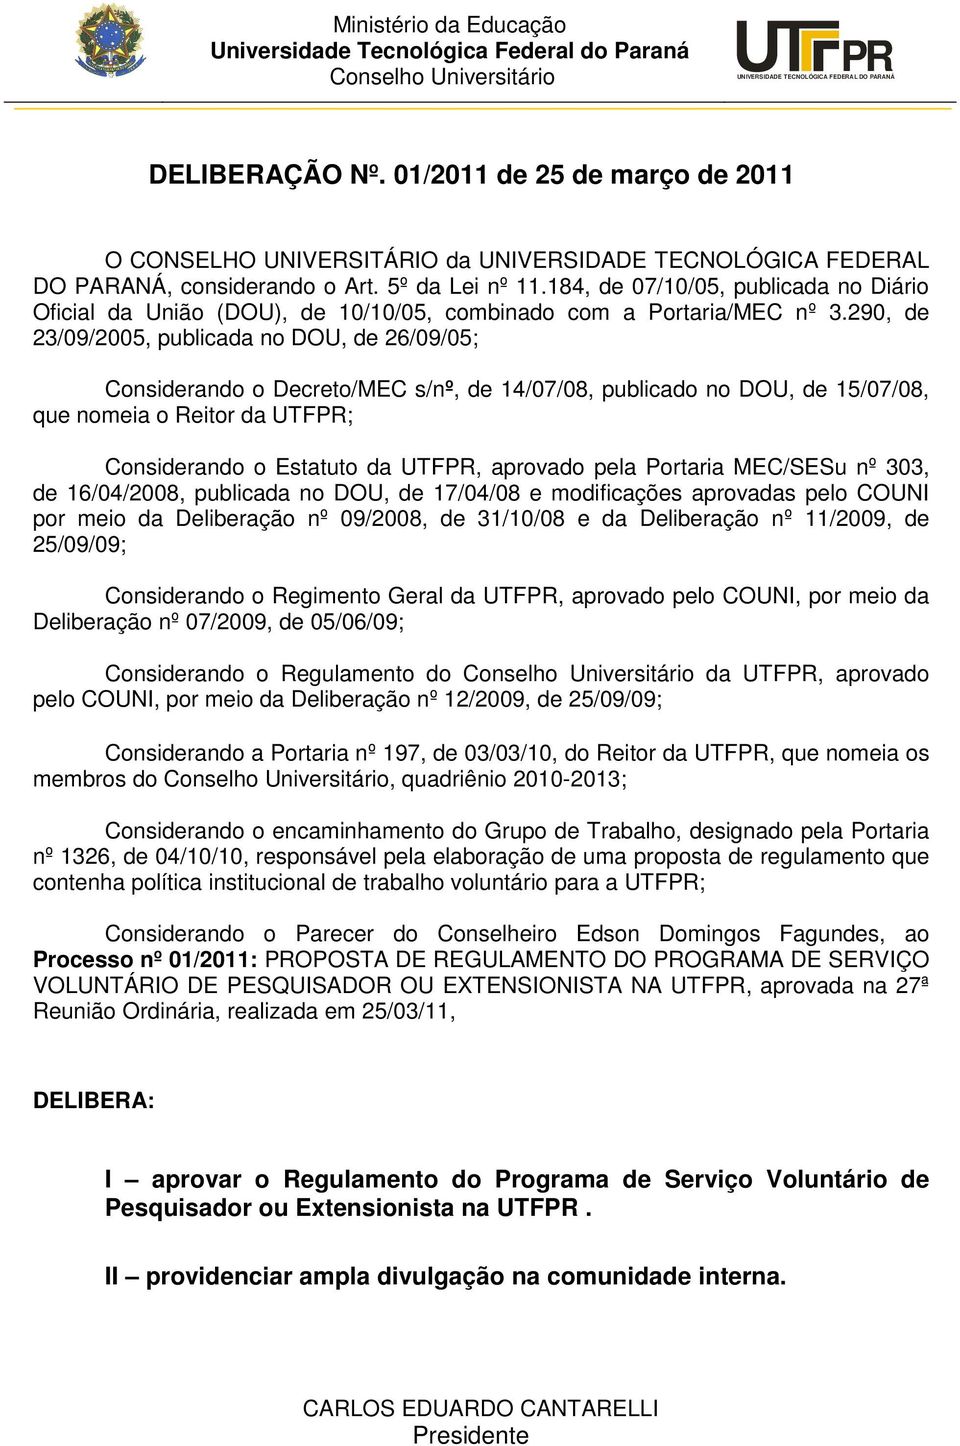 184, de 07/10/05, publicada no Diário Oficial da União (DOU), de 10/10/05, combinado com a Portaria/MEC nº 3.